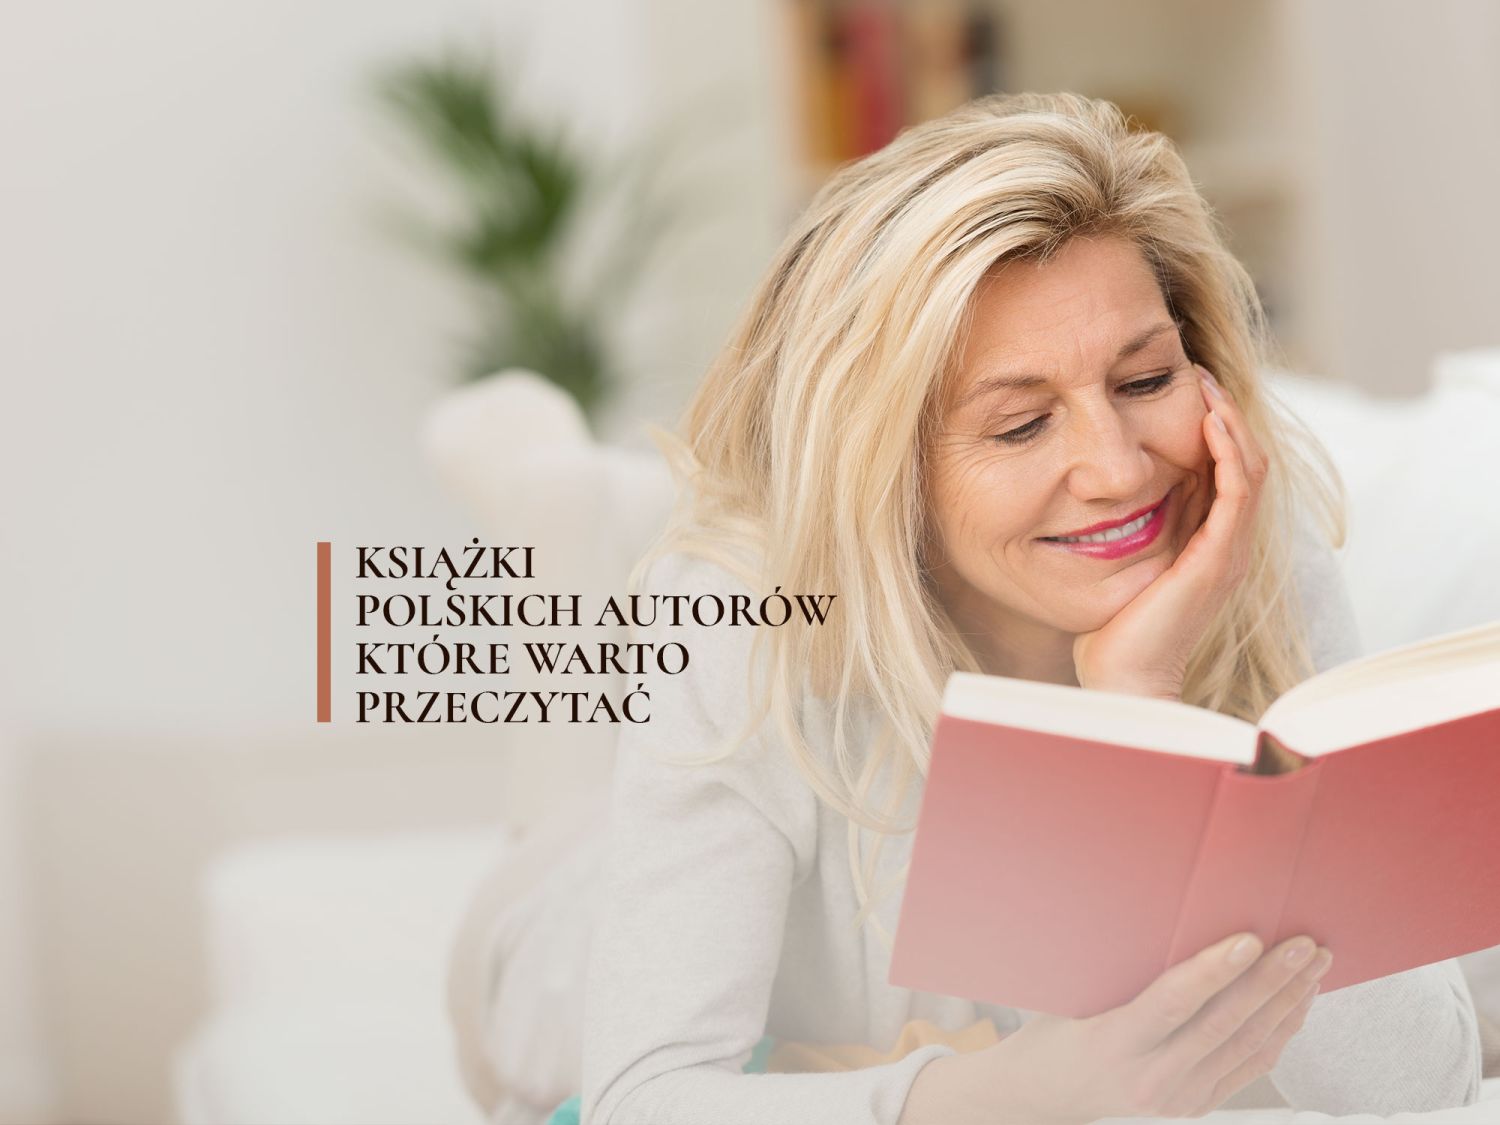 Książki polskich autorów, które warto przeczytać. 13 propozycji dla miłośników literatury!